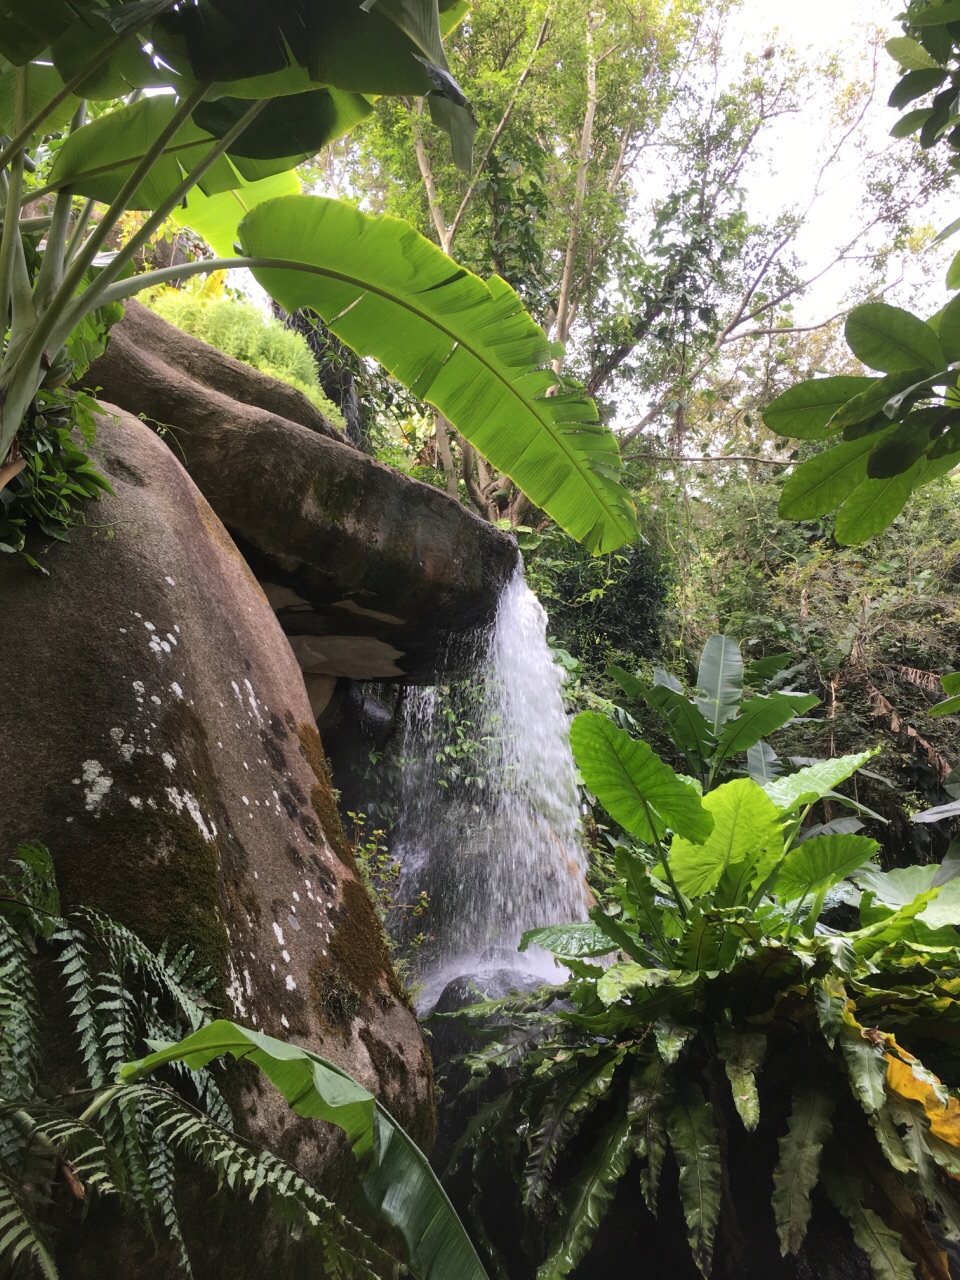 热带雨林最值得去,但园内的游览车的终点国防园可以不去,没什么景色.